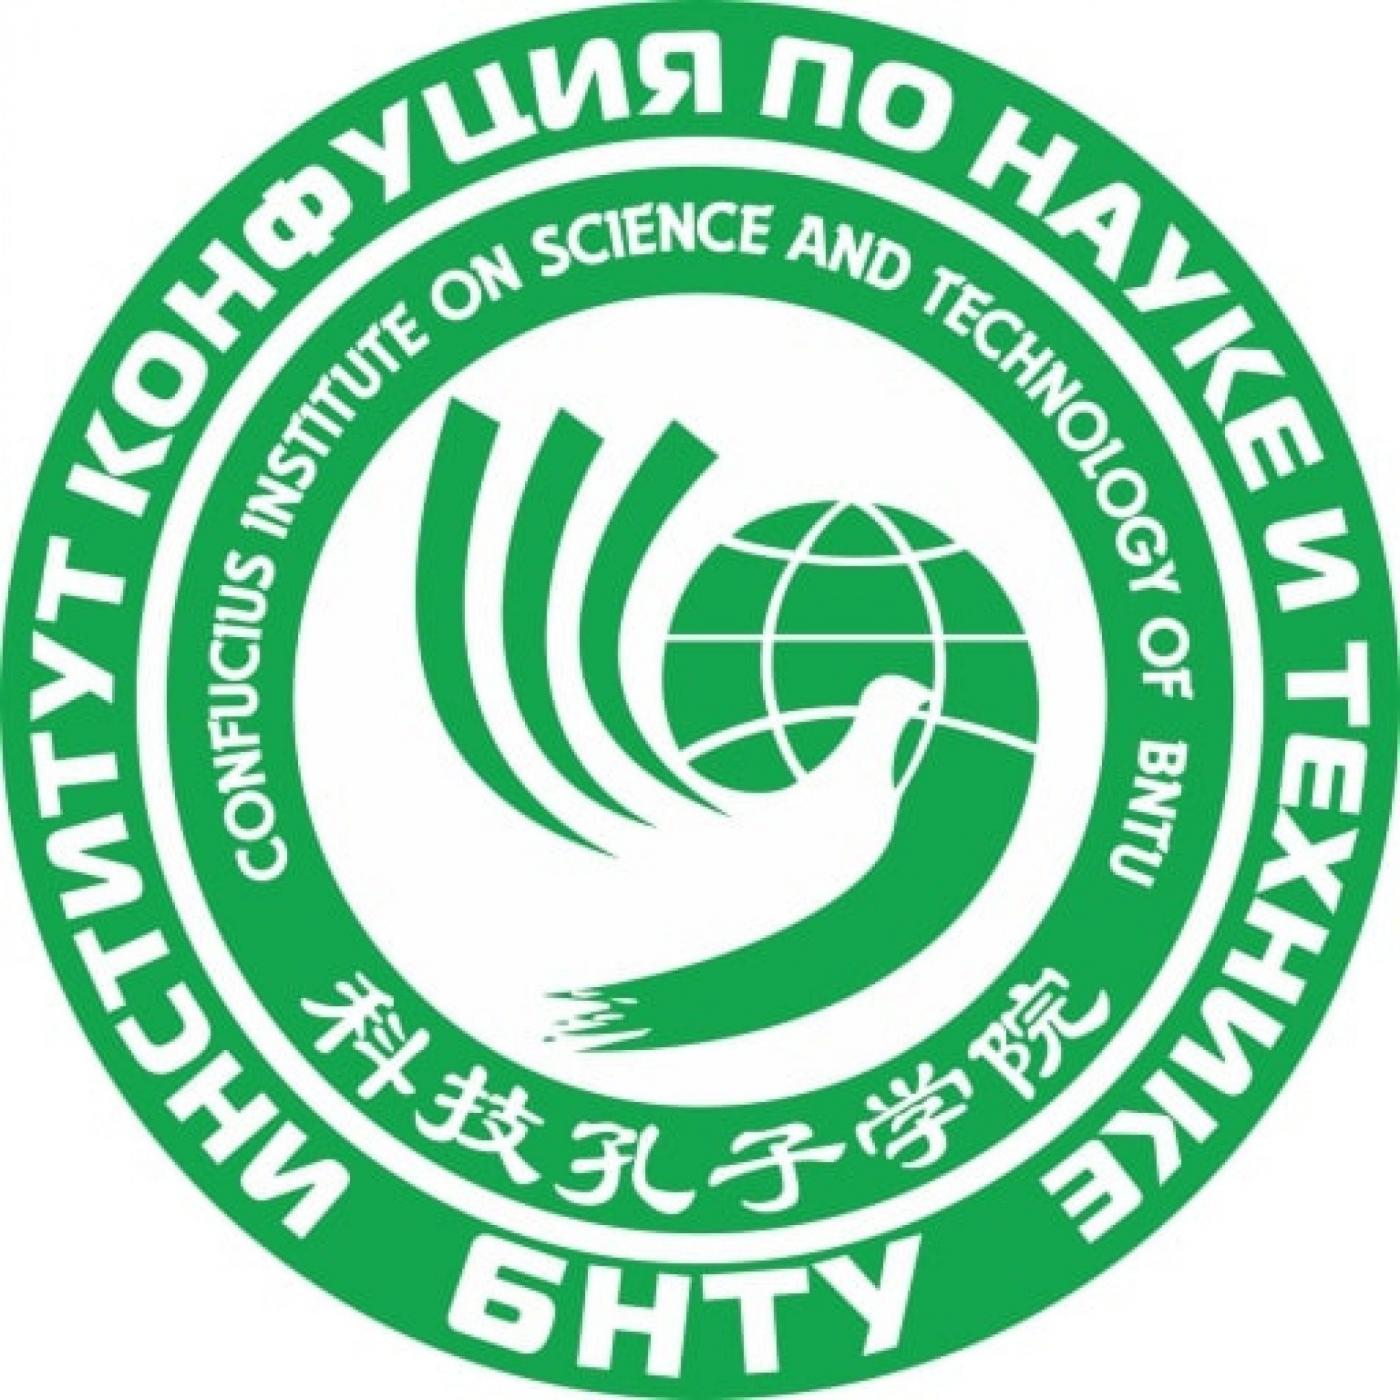 Институт Конфуция по науке и технике БНТУ вошел в список 100 лучших брендов-партнеров Китайского альянса